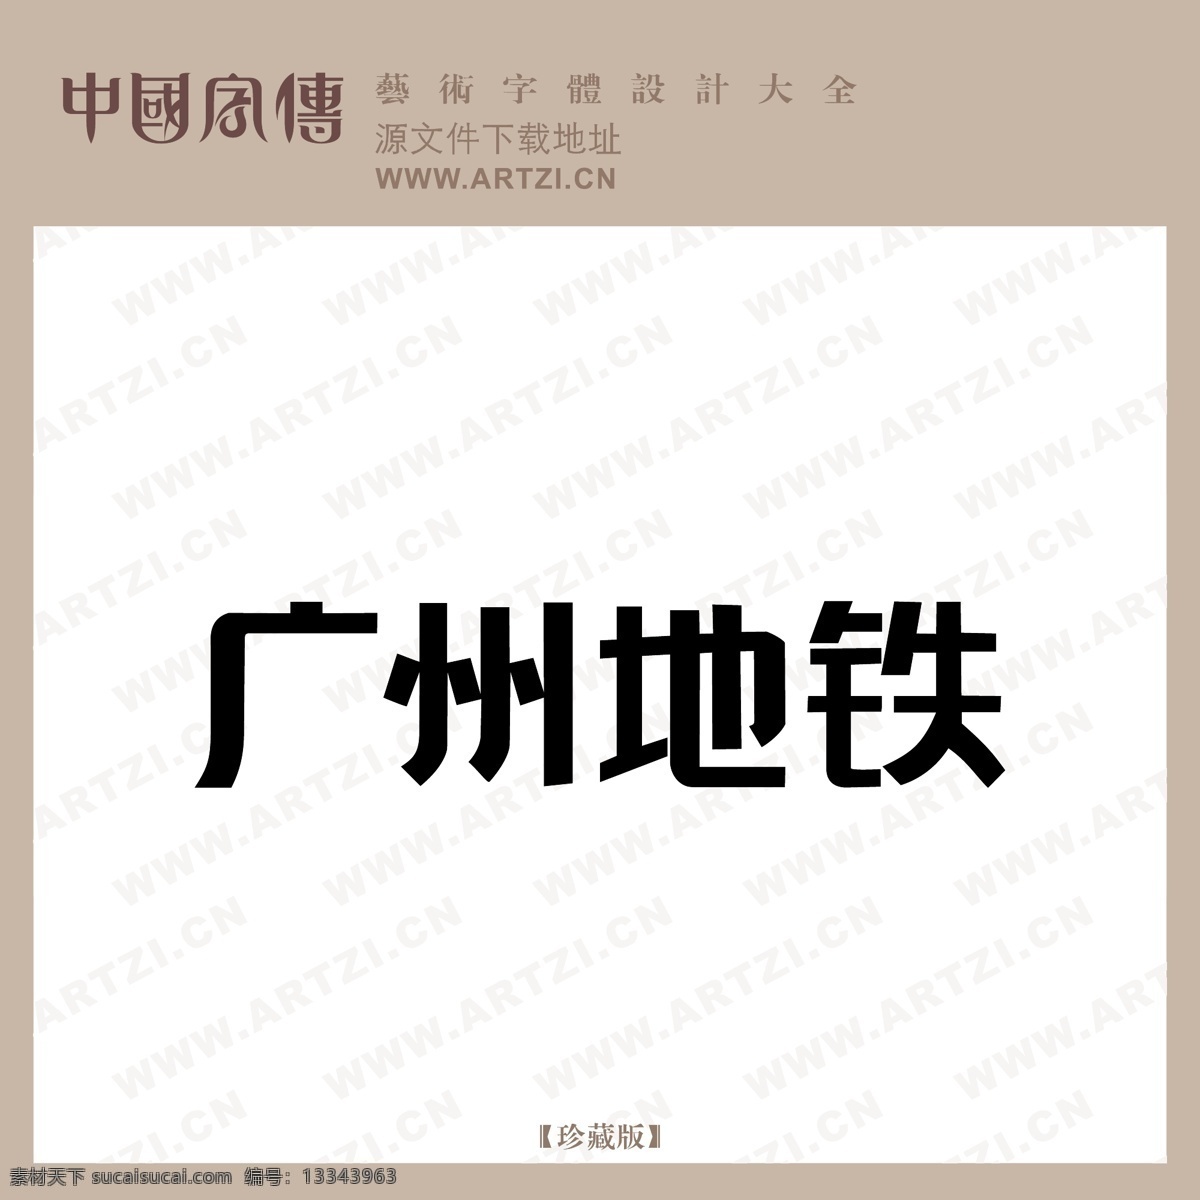 广州 地铁 logo大全 广州地铁 商业矢量 矢量下载 网页矢量 矢量图 其他矢量图